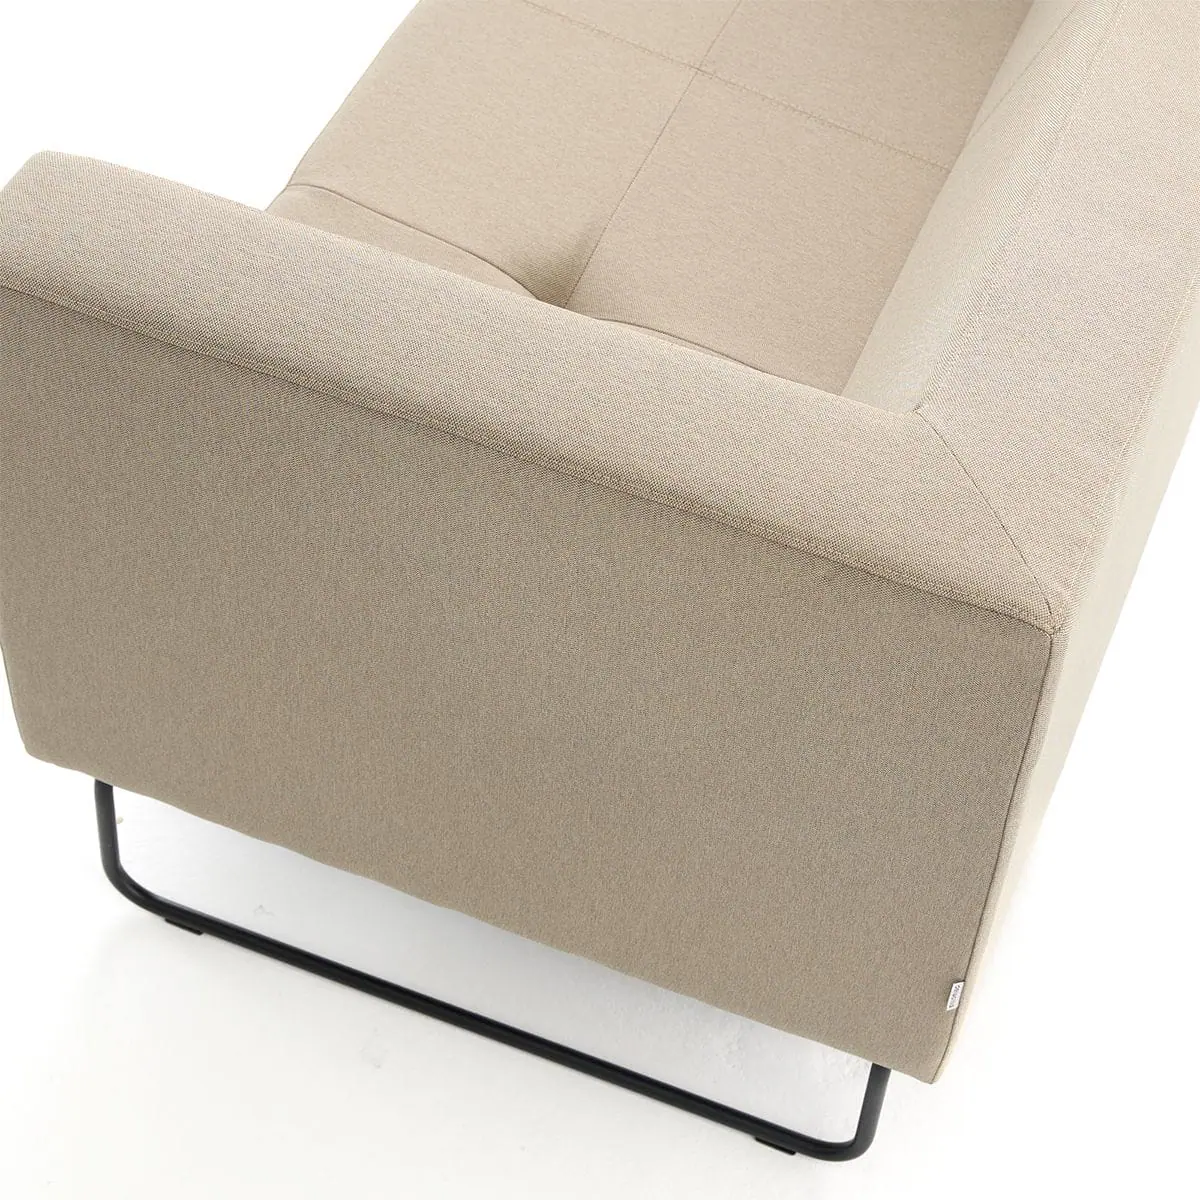 delaoliva-etna-soft-lounge-seating-009